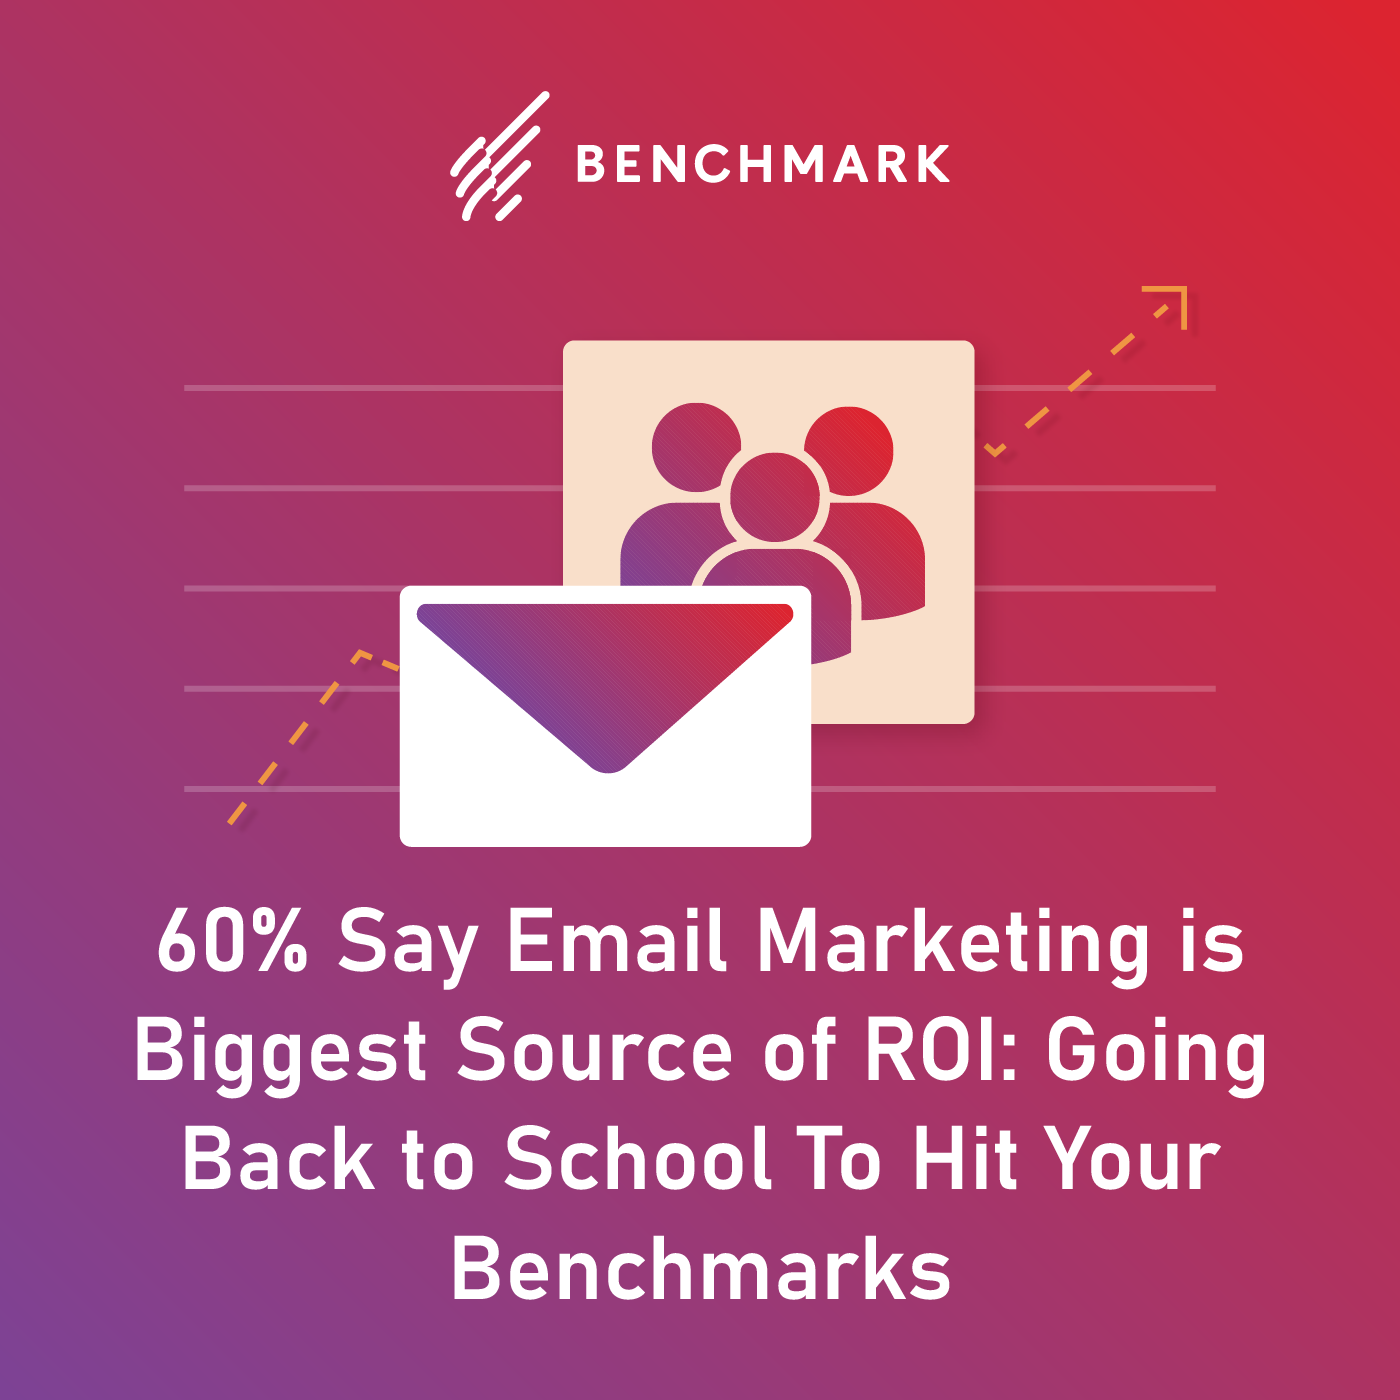 60% dizem que o marketing por e-mail é a maior fonte de ROI: voltar à escola para atingir seus benchmarks